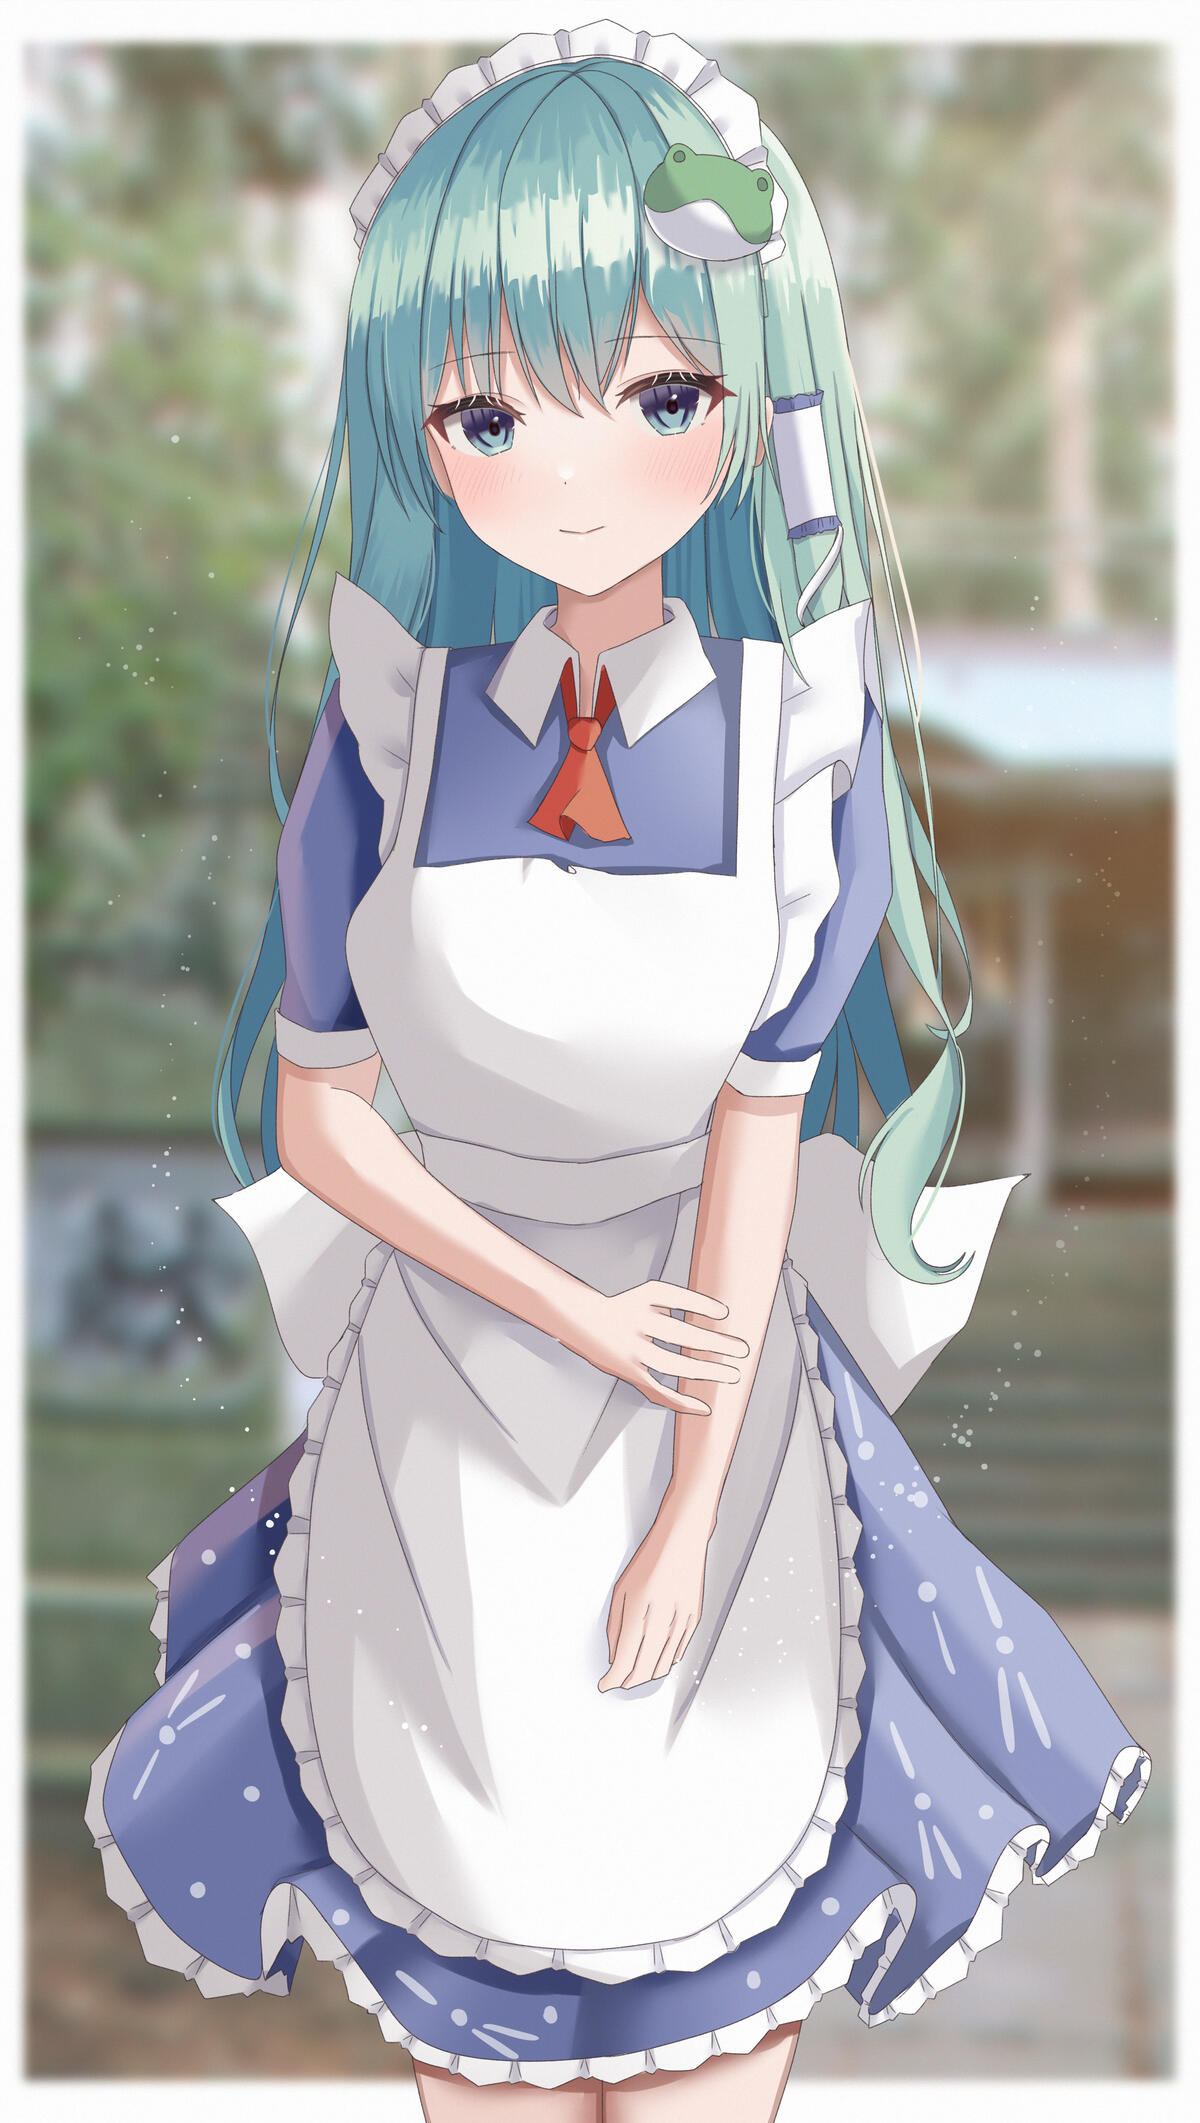 Anime girl with blue hair.